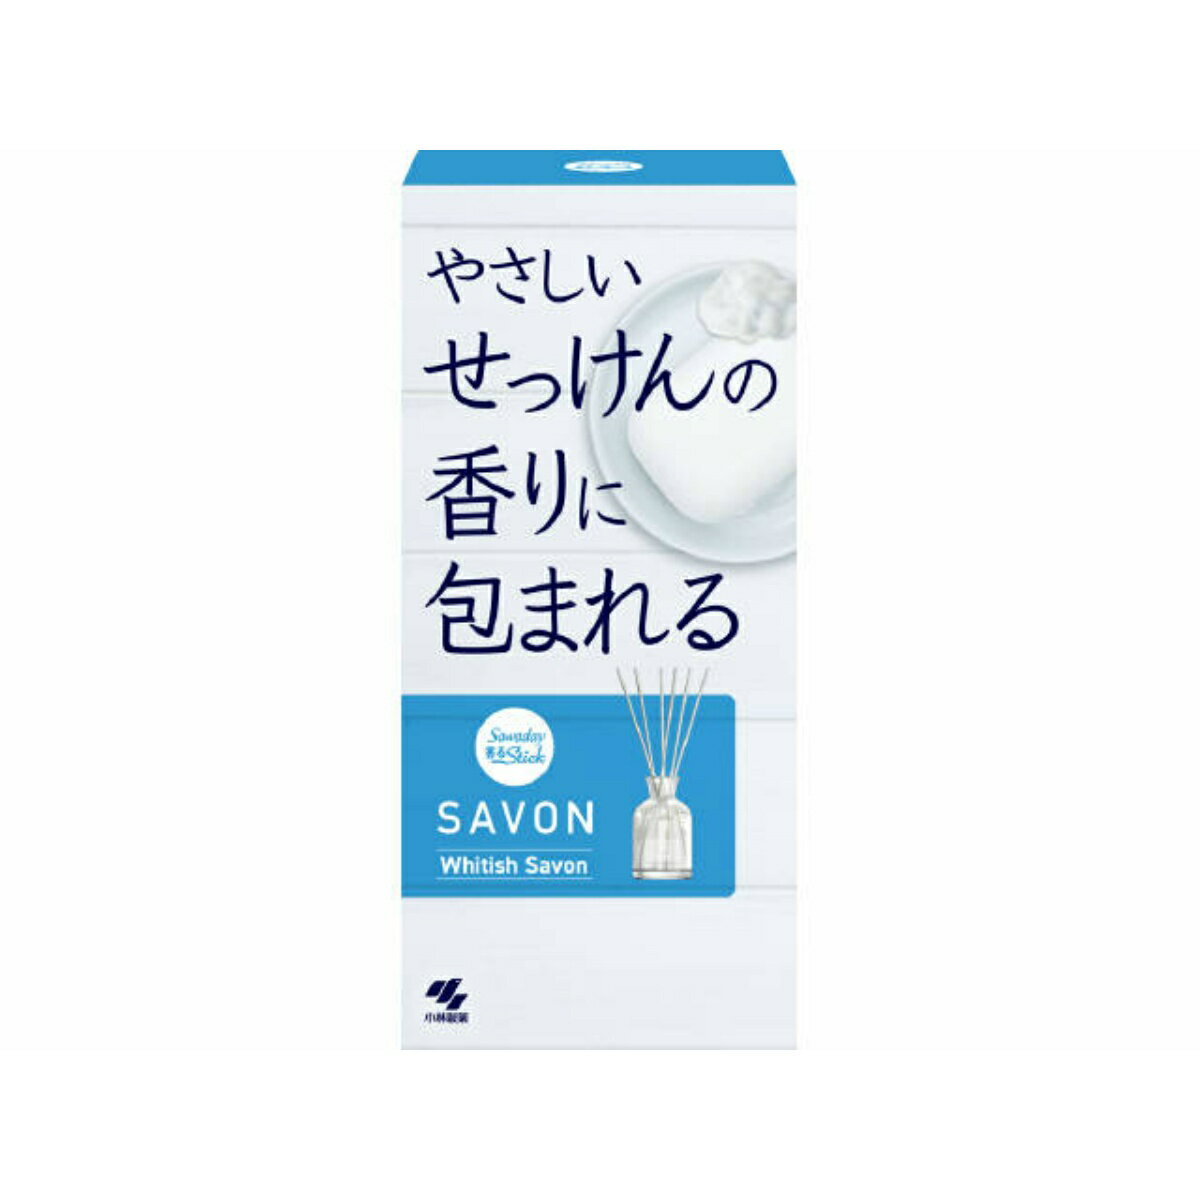 小林製薬 SAWADAY サワデー 香るSTICK SAVON WHITISH SAVON 70ml 芳香剤